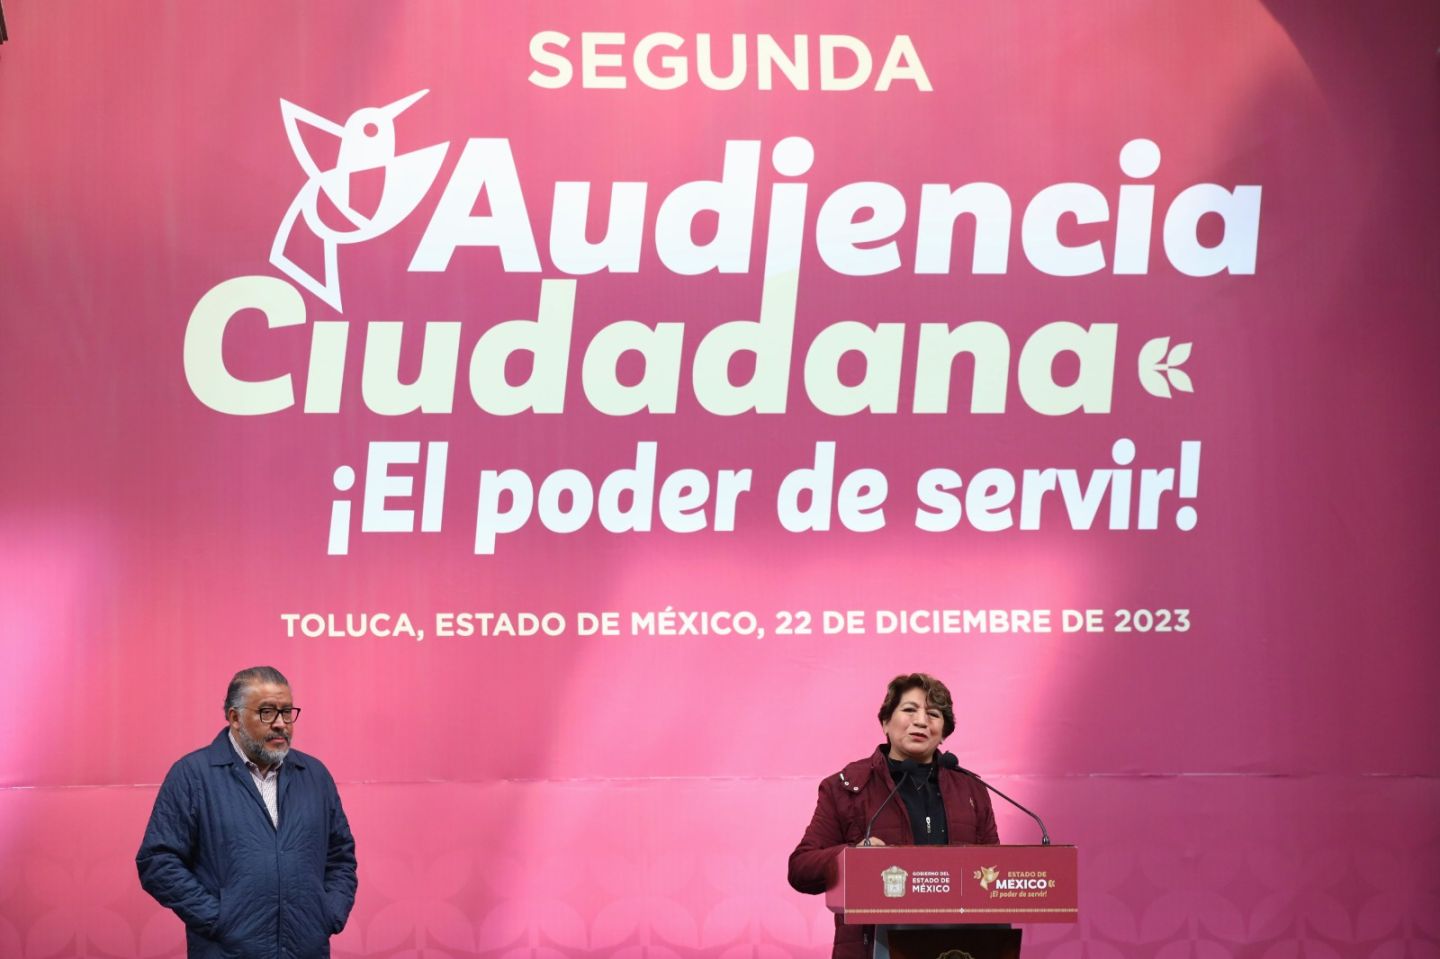 Arranca con éxito segunda audiencia ciudadana en Toluca